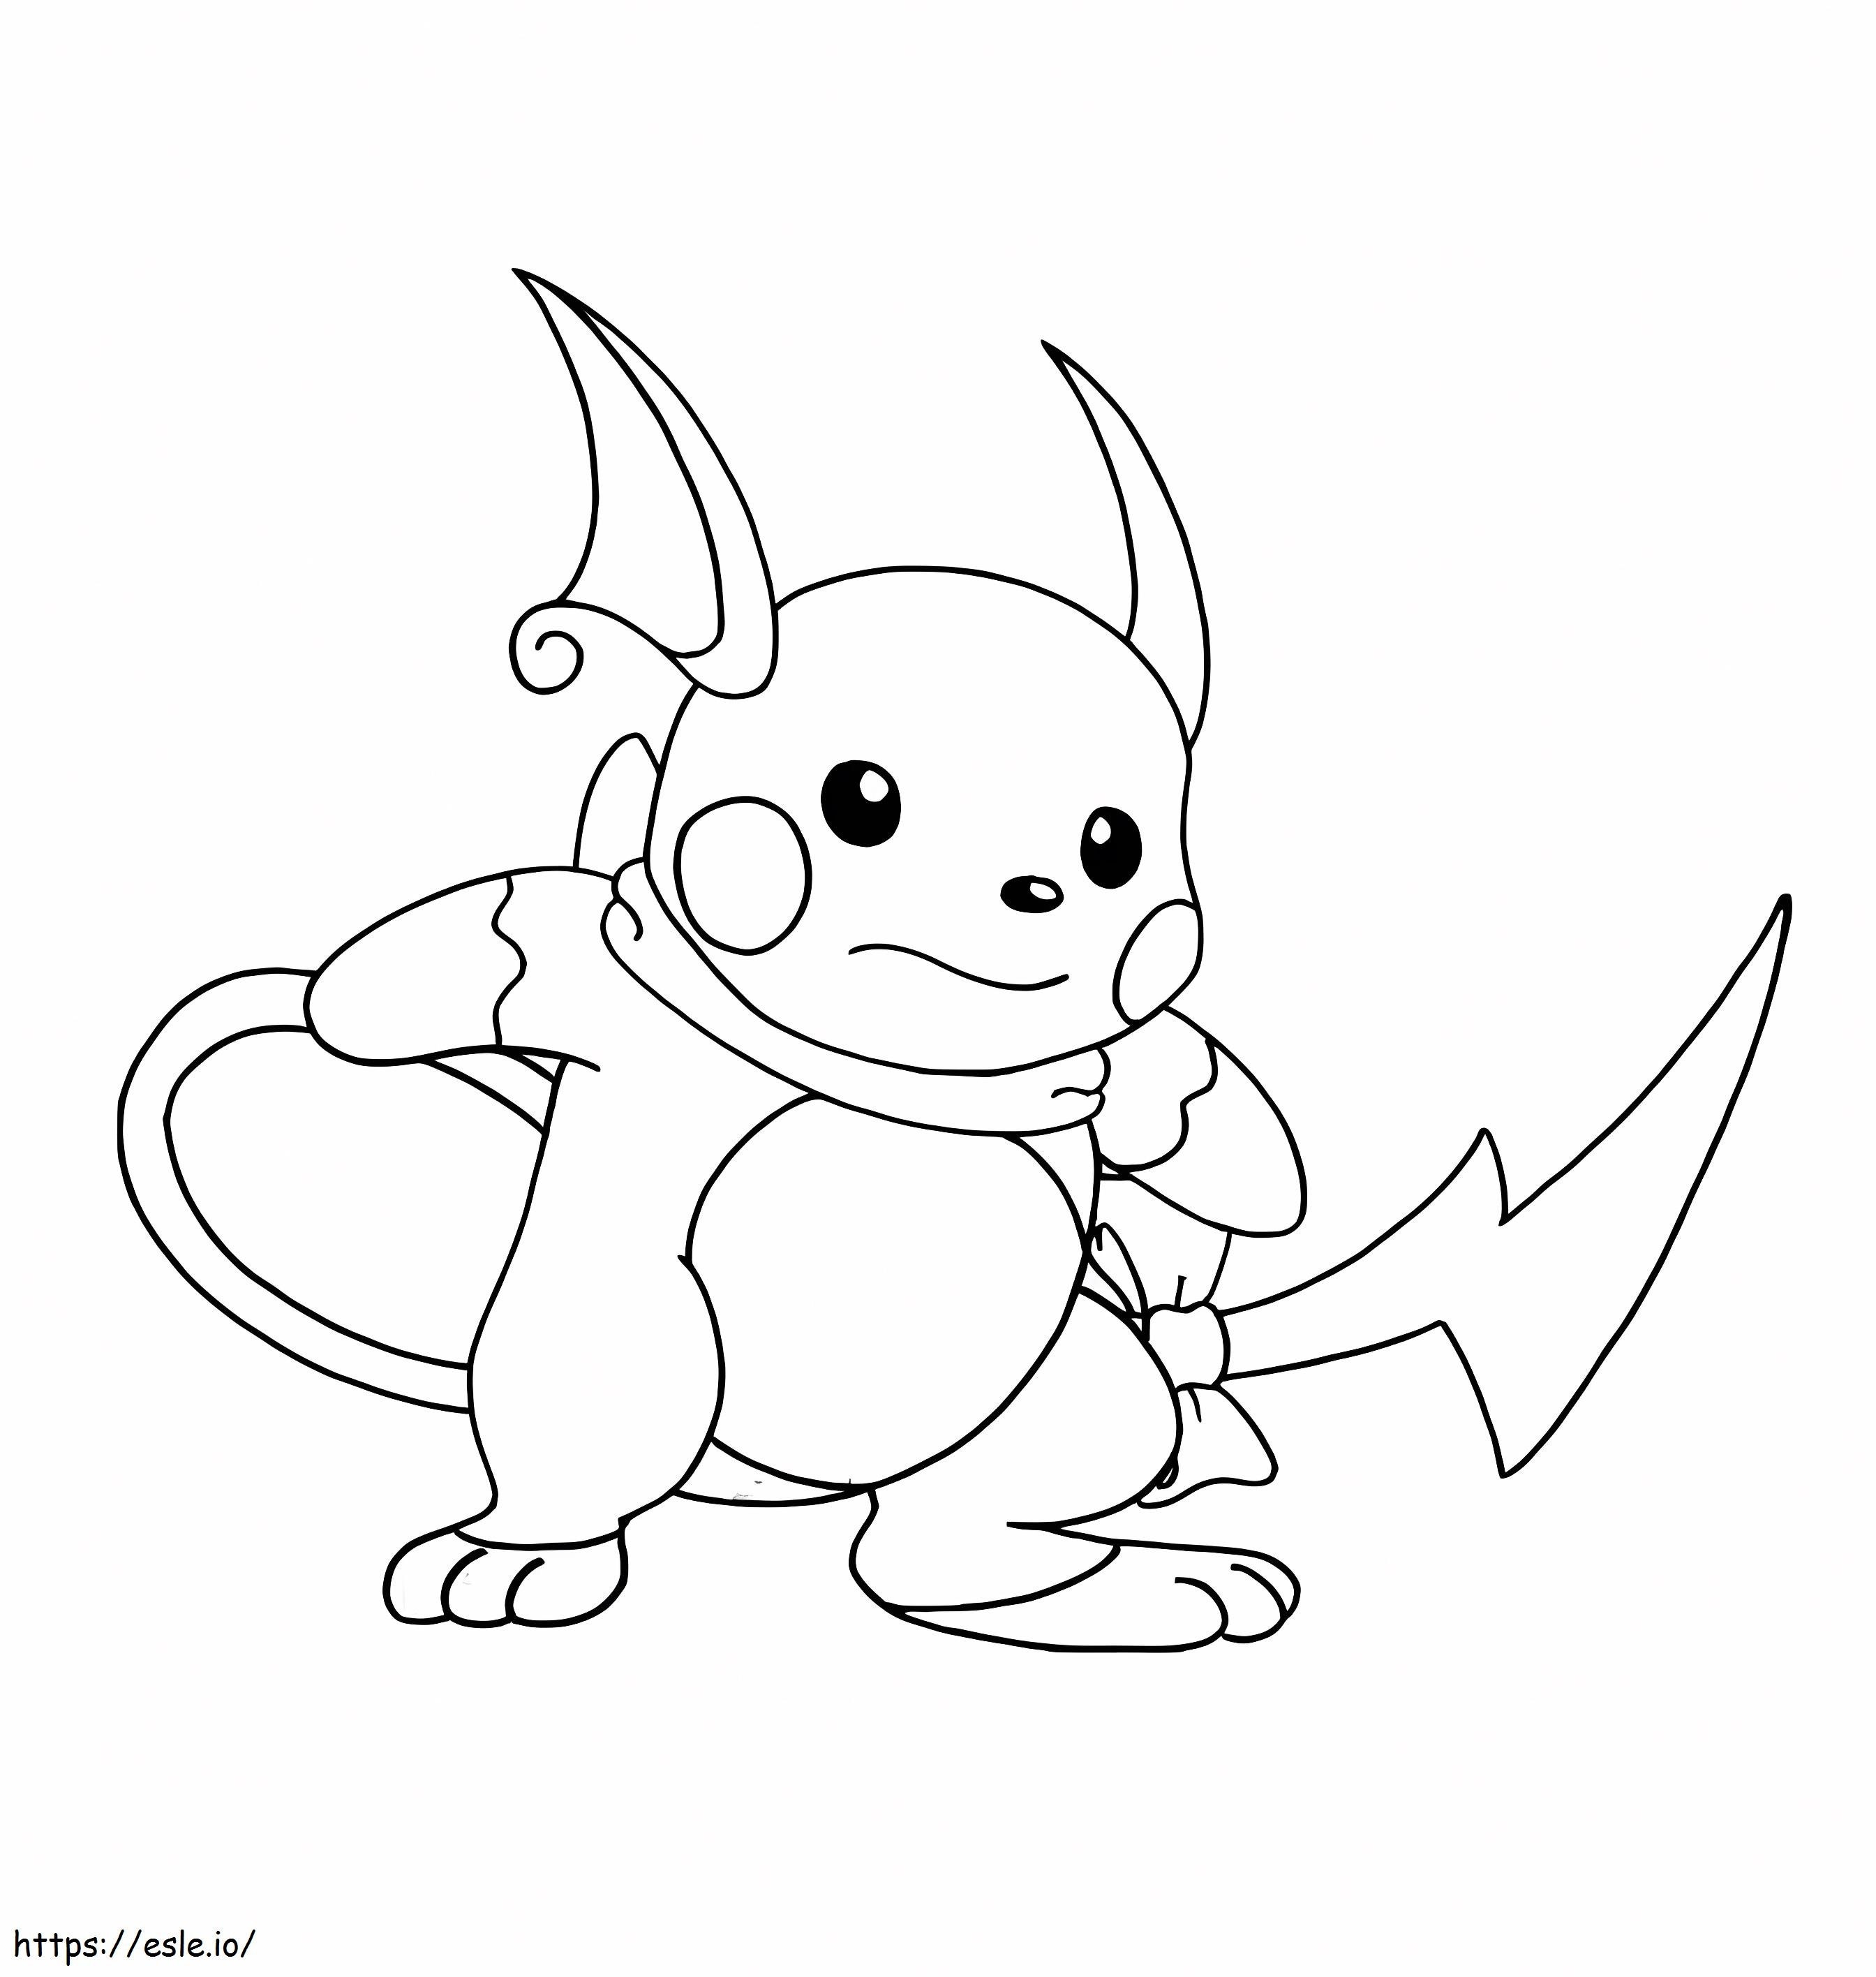 Coloriage Pokemon Raichu 7 à imprimer dessin